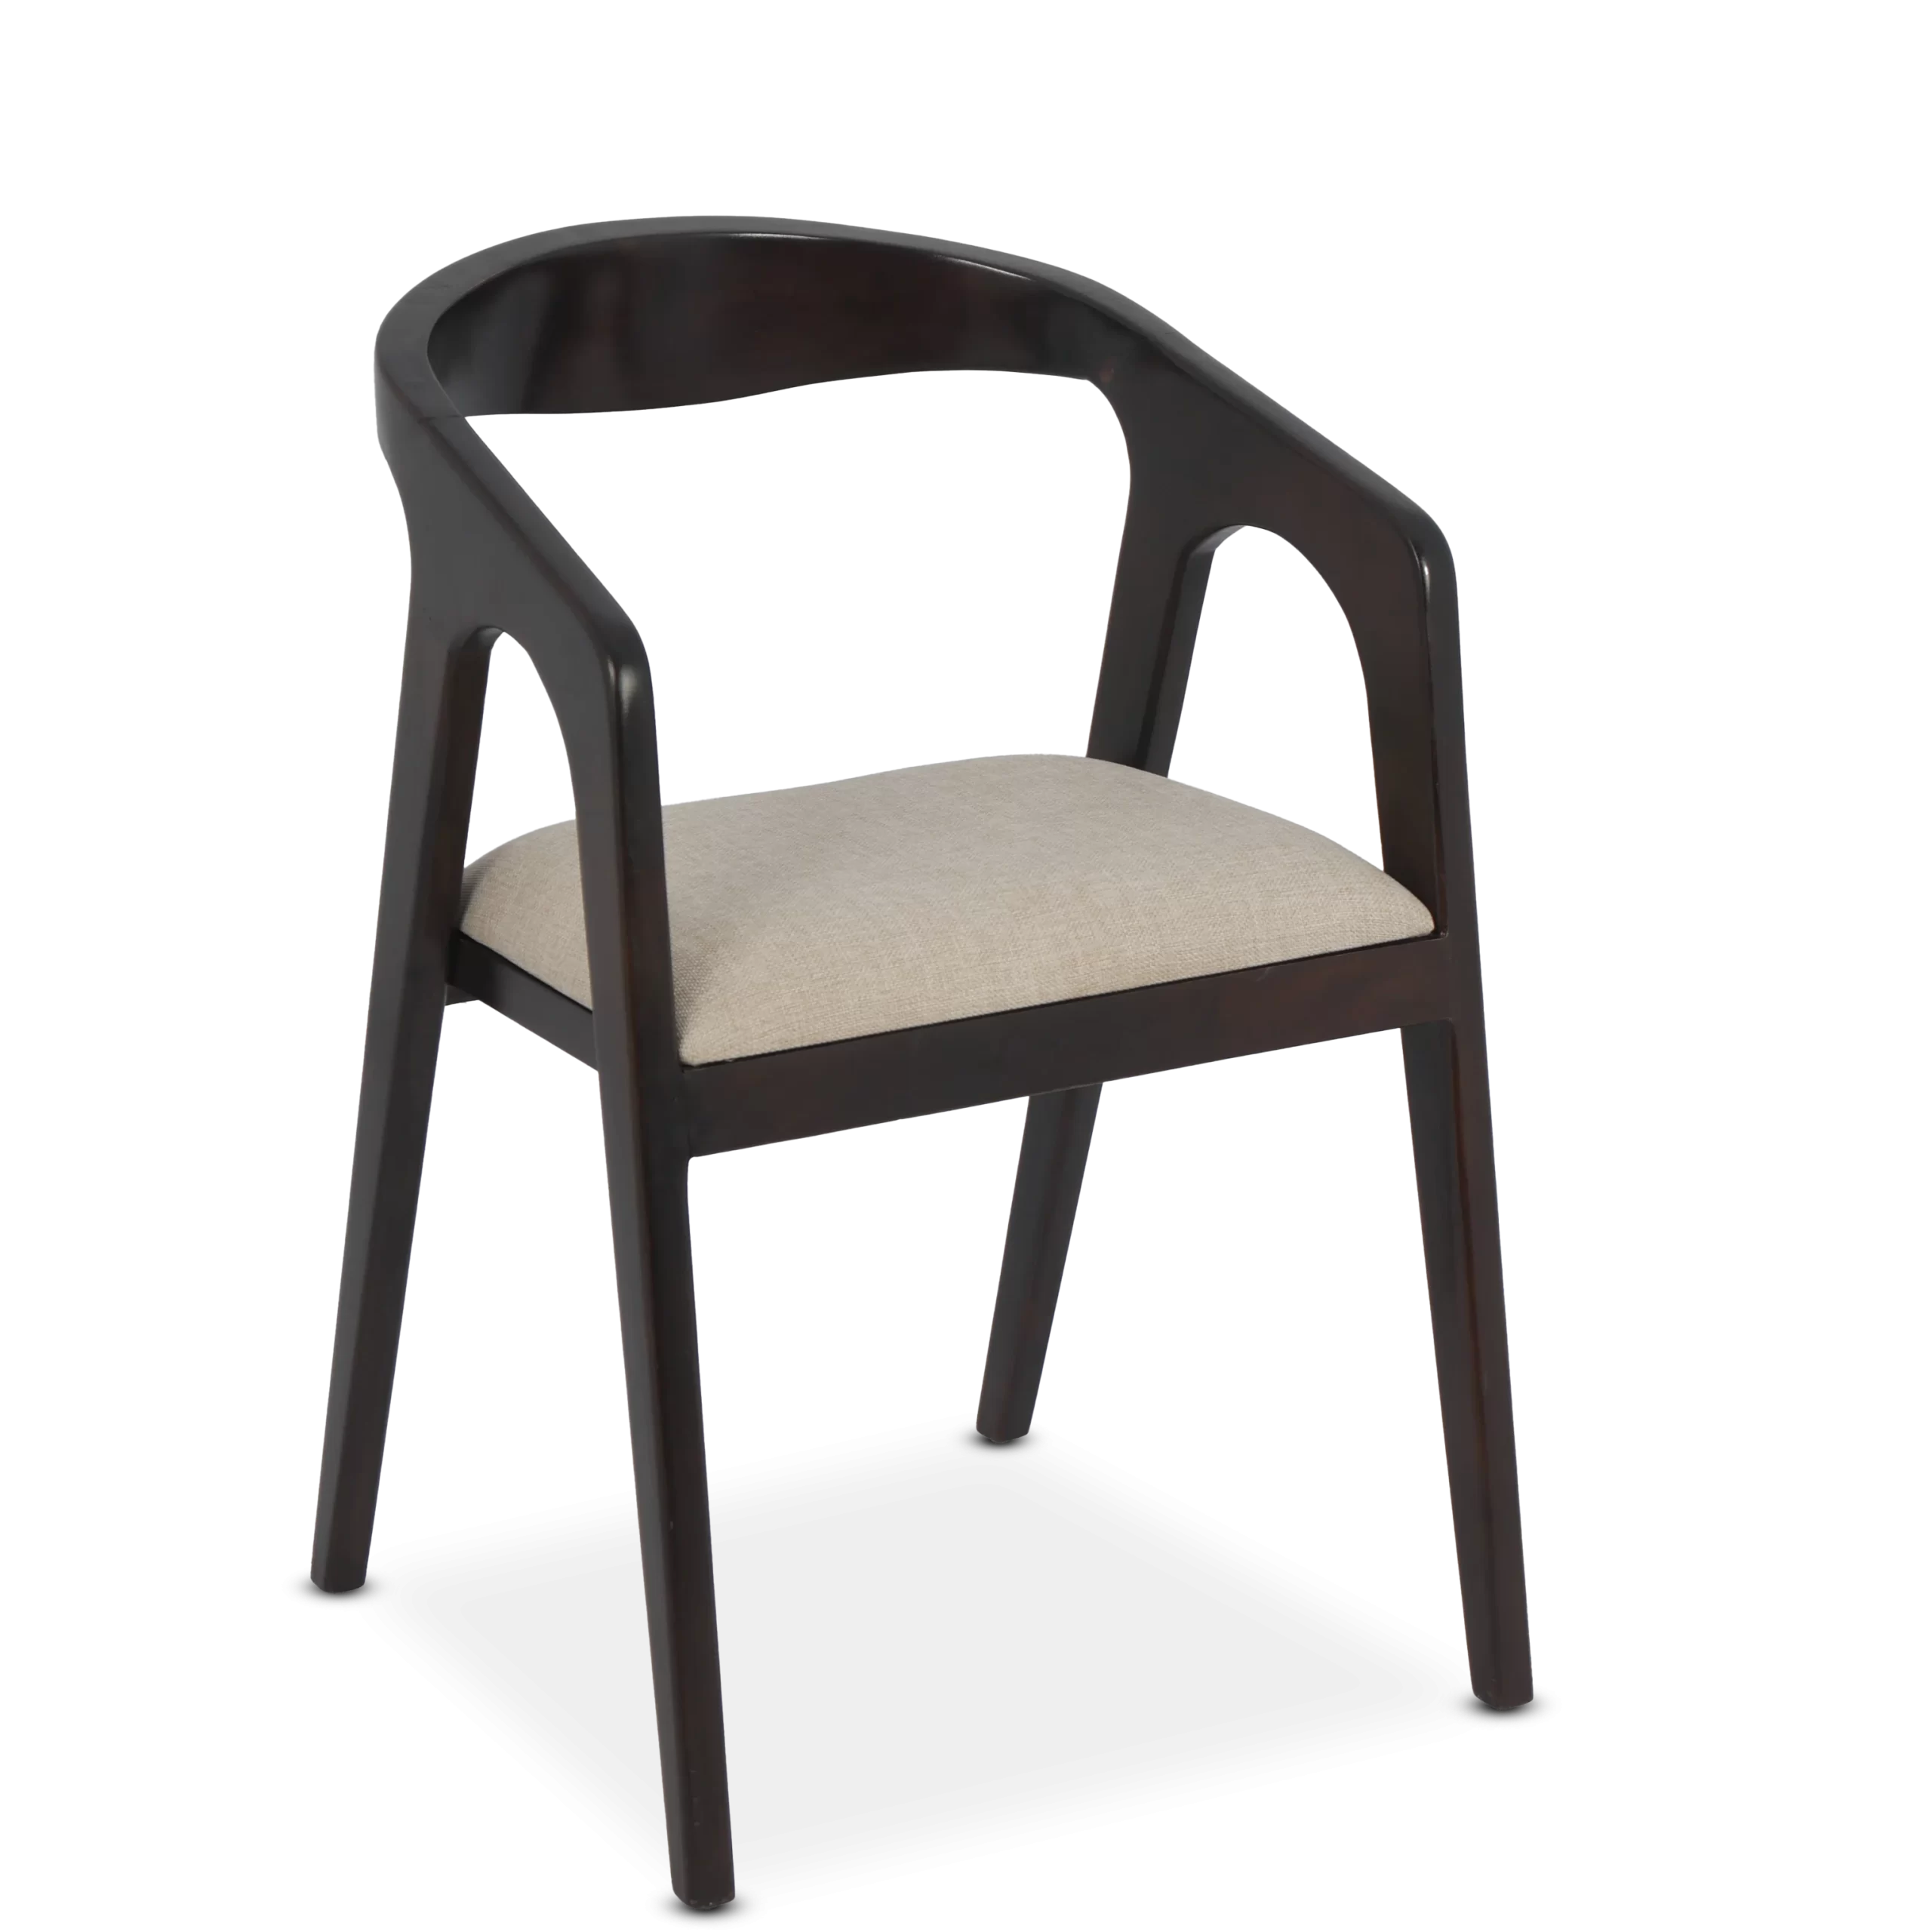 DUA Chair